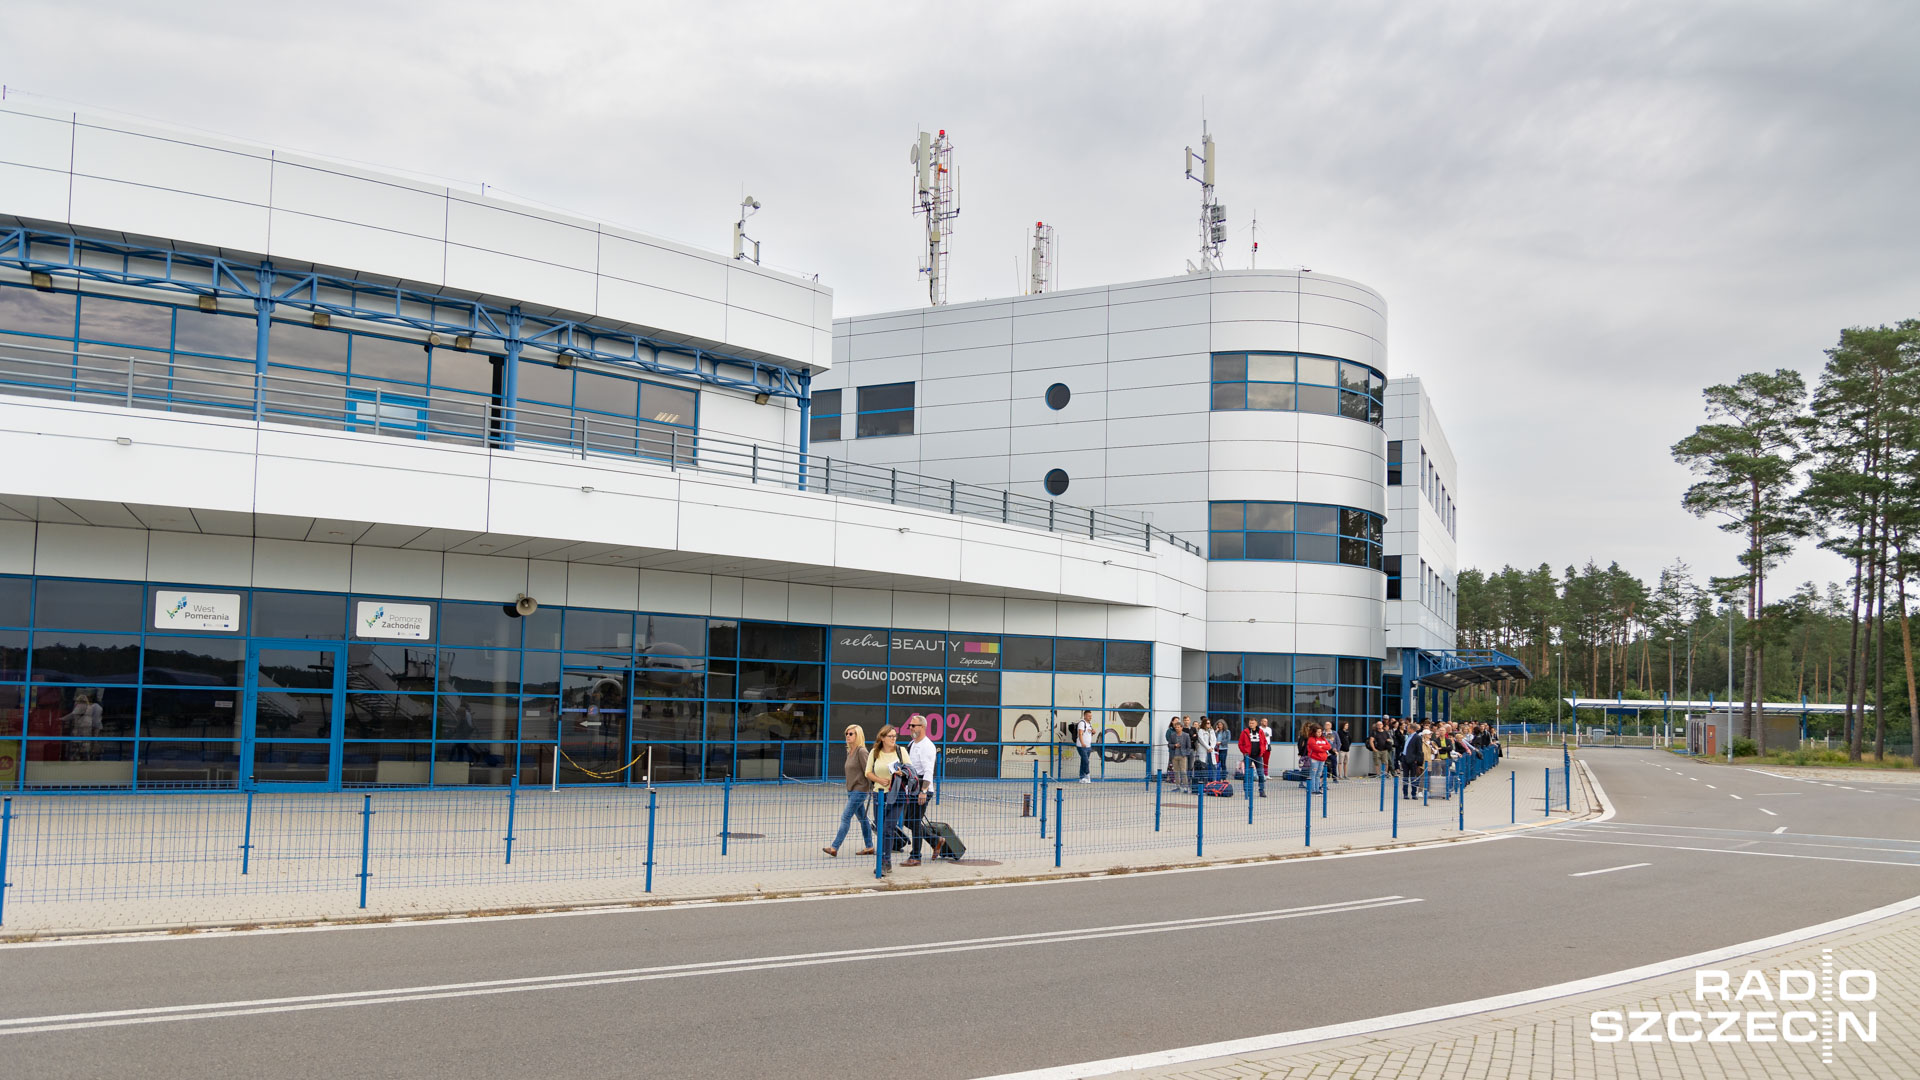 Większe lotnisko, to więcej połączeń i pasażerów - mówilli goście audycji Radio Szczecin na Wieczór. Chodzi o rozbudowę Portu Lotniczego w Goleniowie.